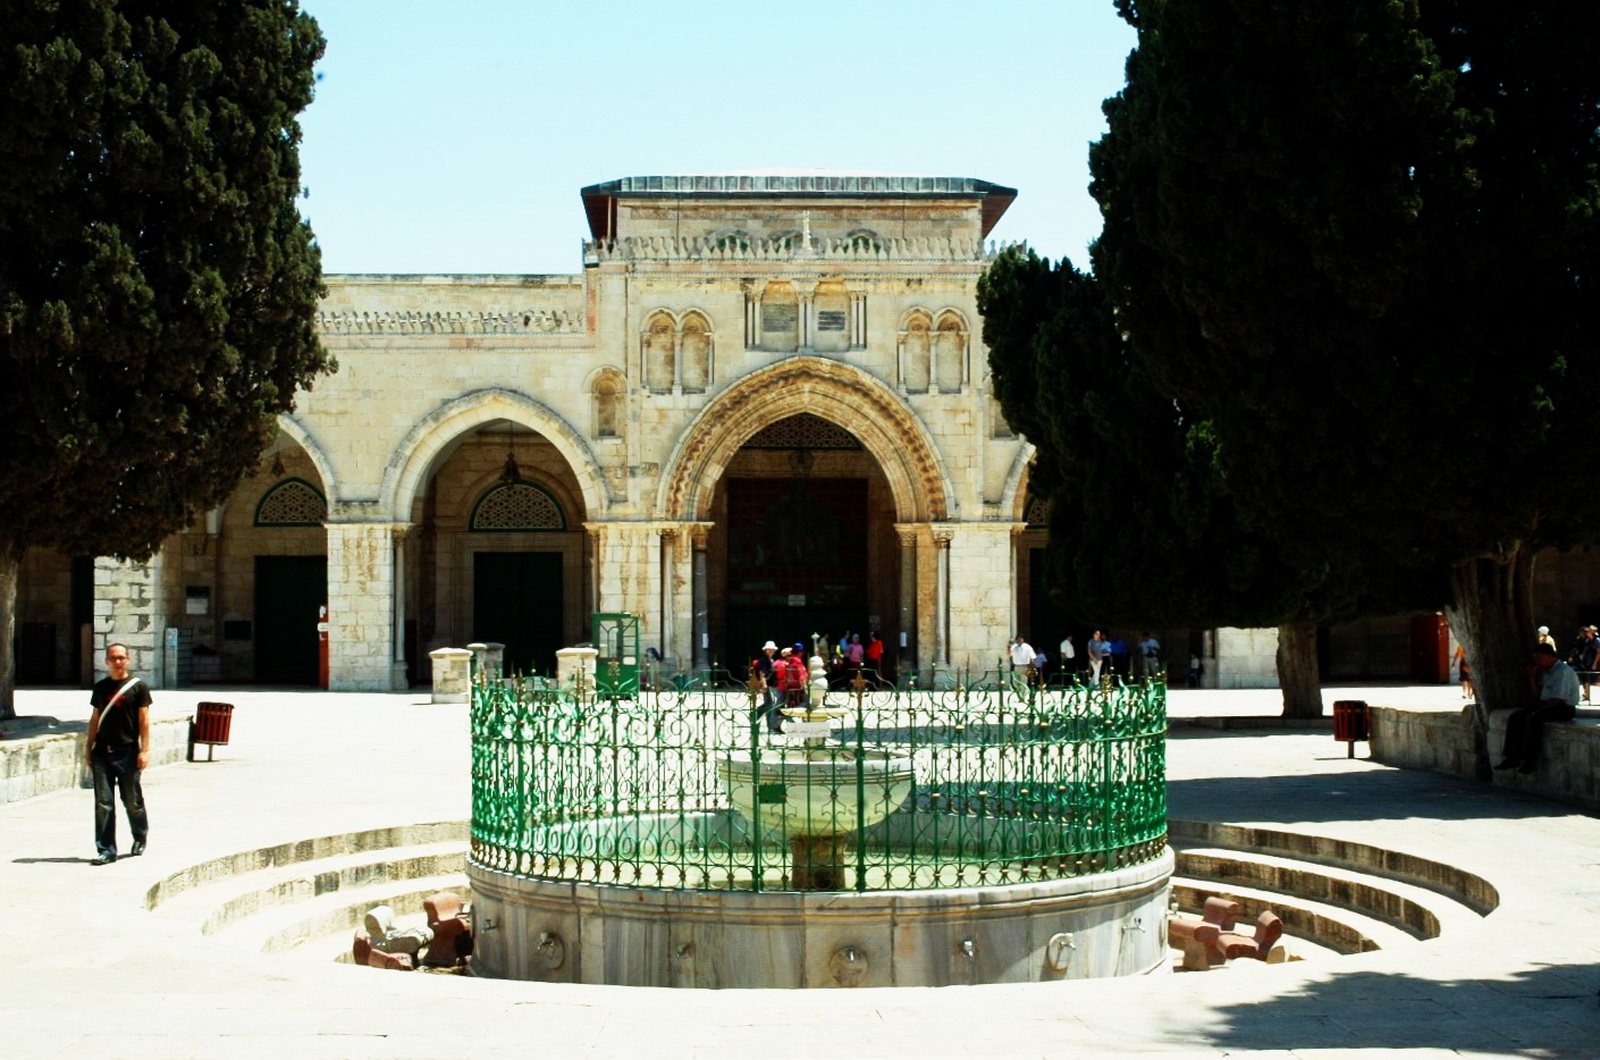 הר הבית - מסגד אל אקצה והכוס לרחצה בחזיתו